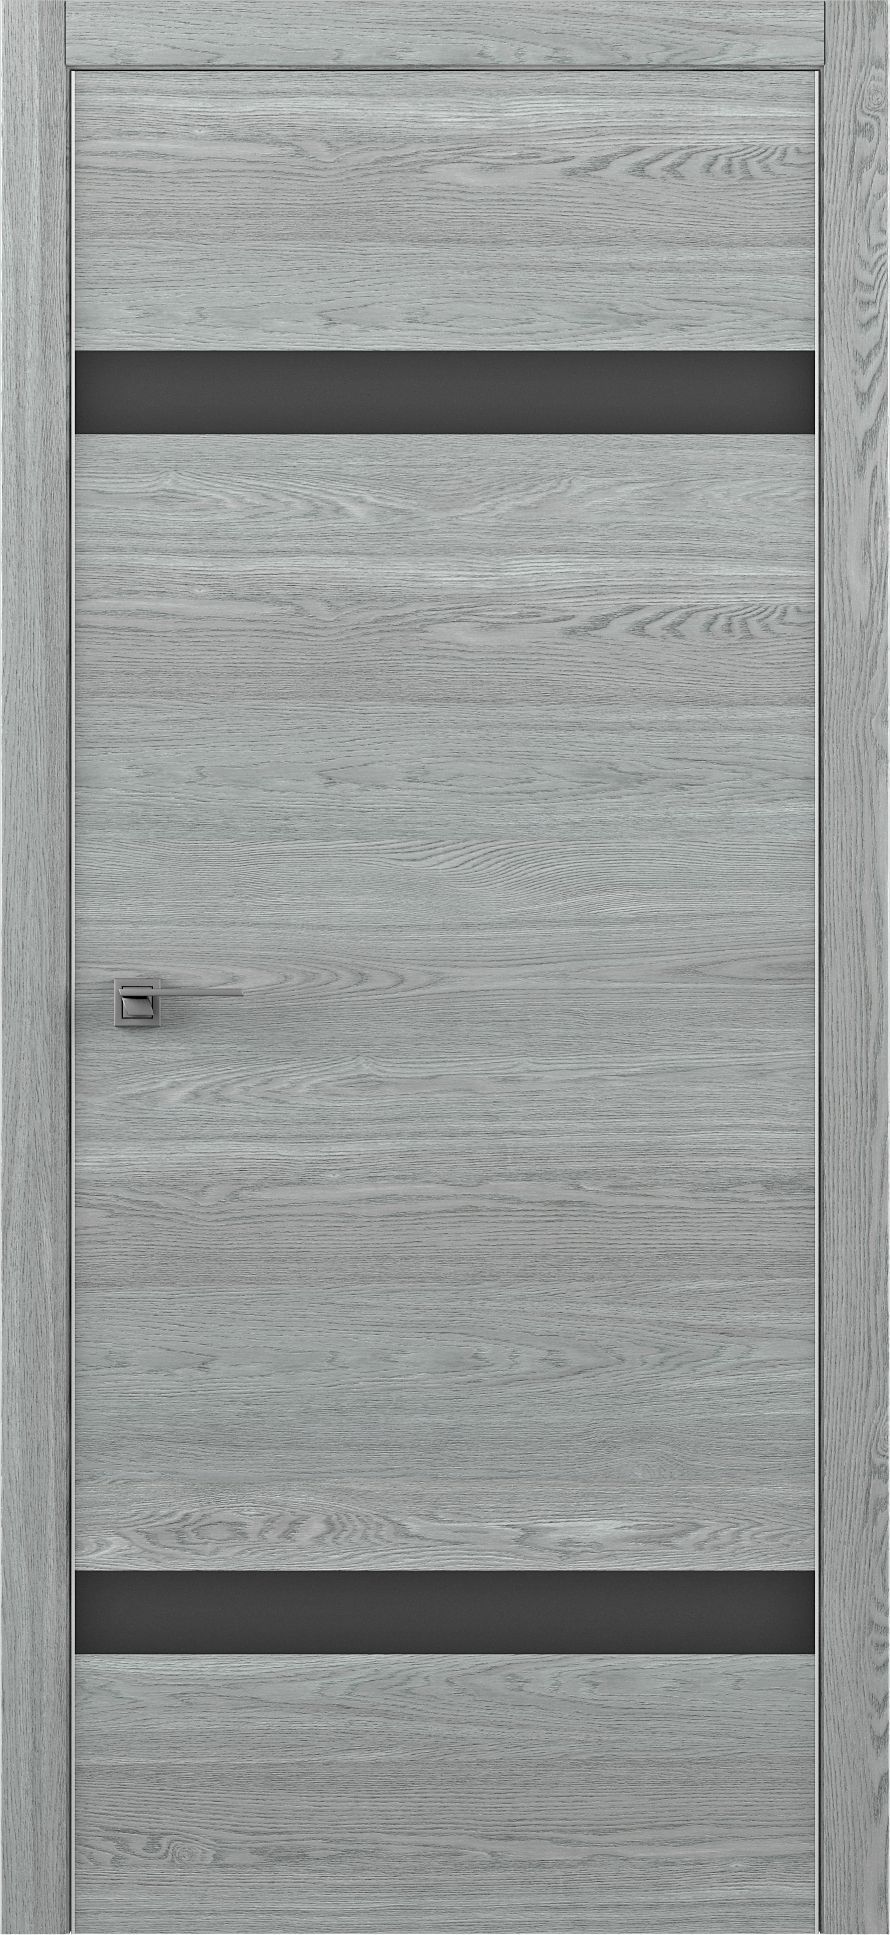 Полотно дверное остекленное Art-шпон S 900 дуб скальный, стекло черное схема STATUS-1 (Morelli 1895)